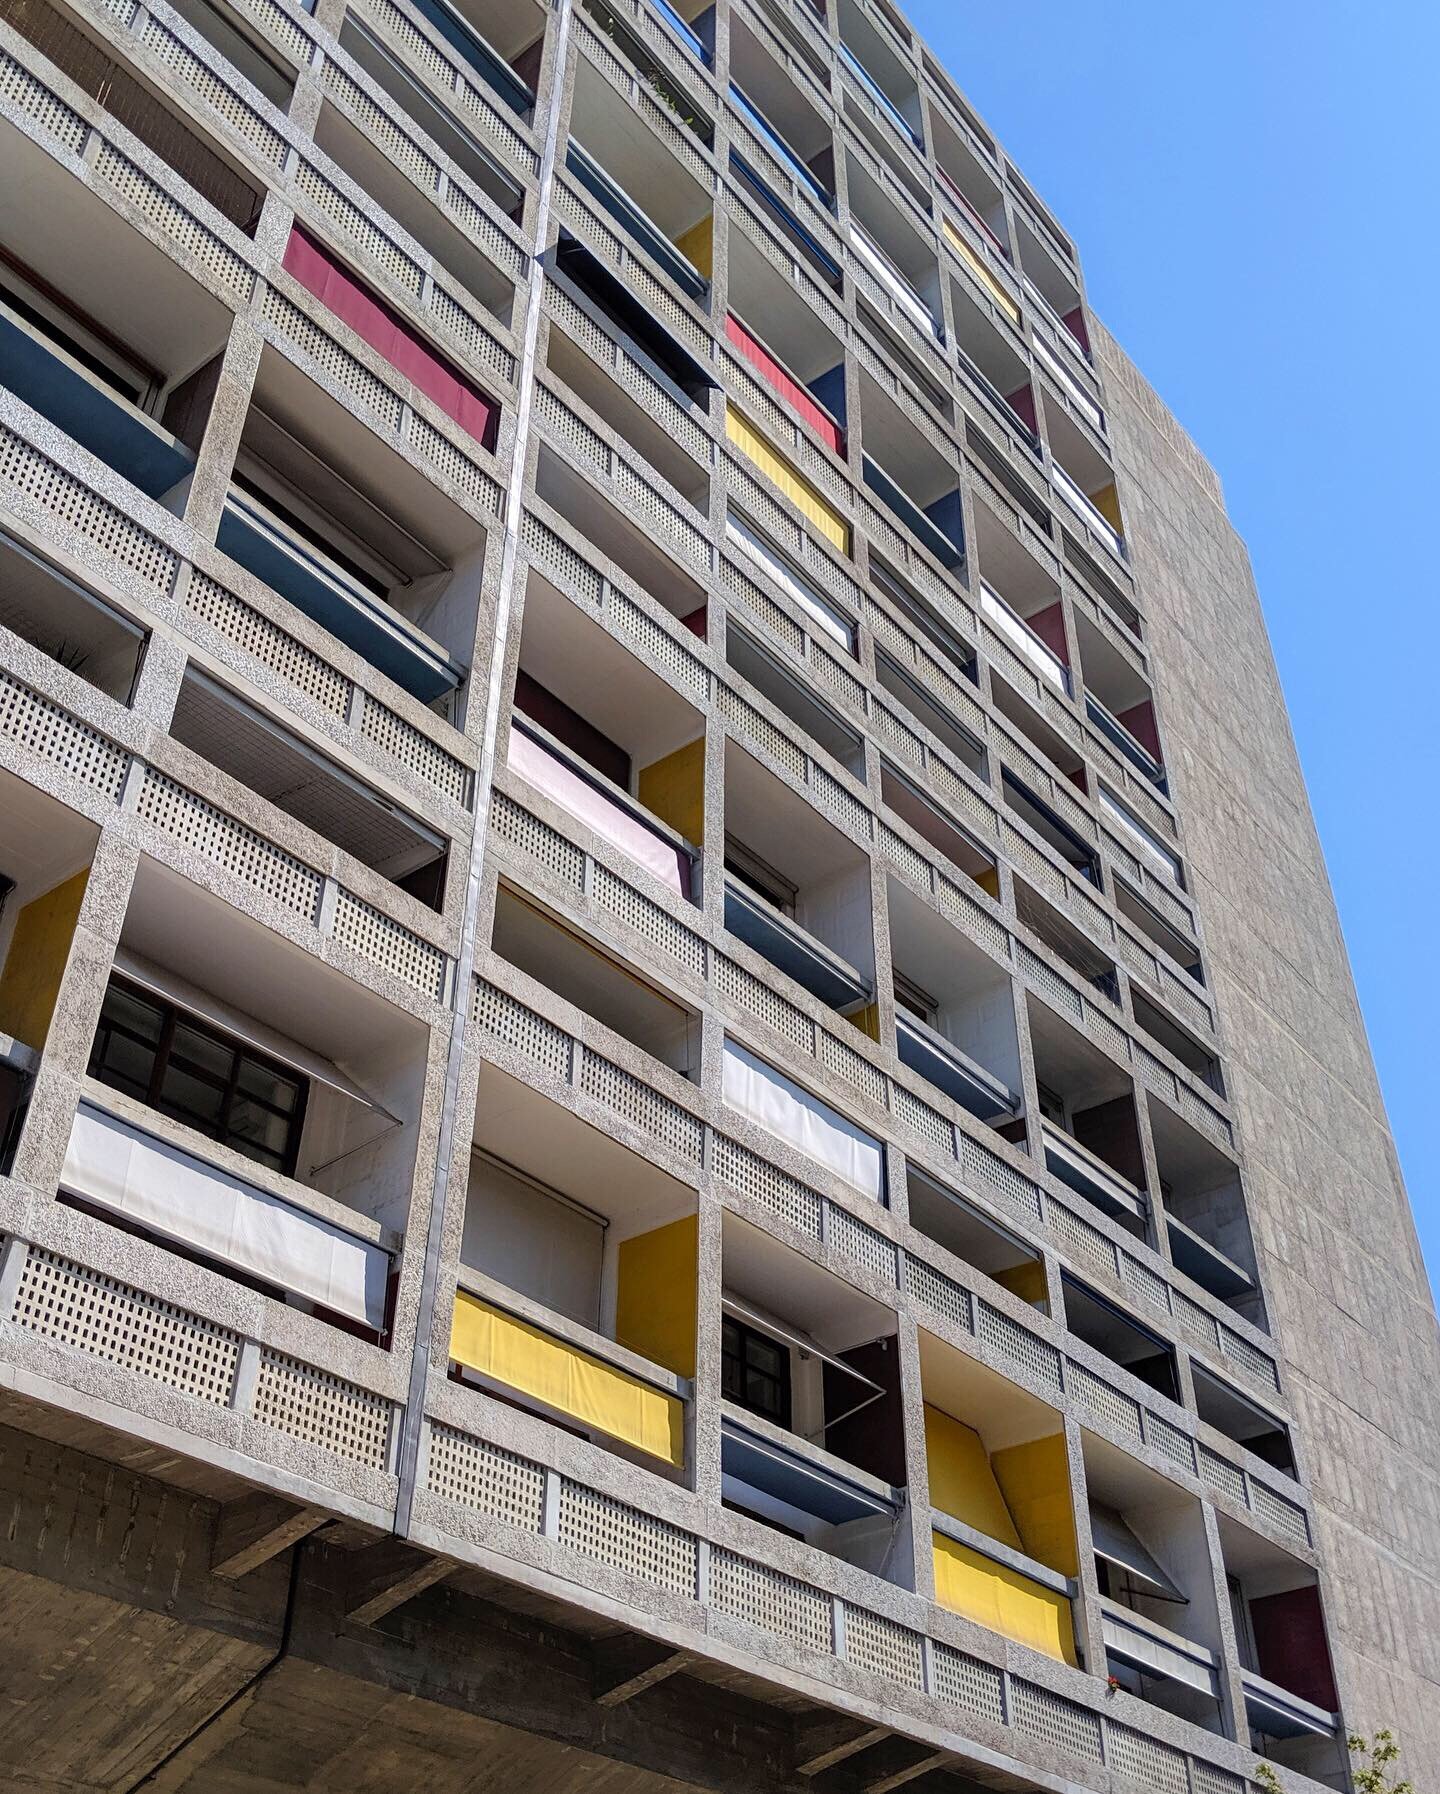  Unité d’Habitation —&nbsp; Cité Radieuse, Le Corbusier, Marseille 